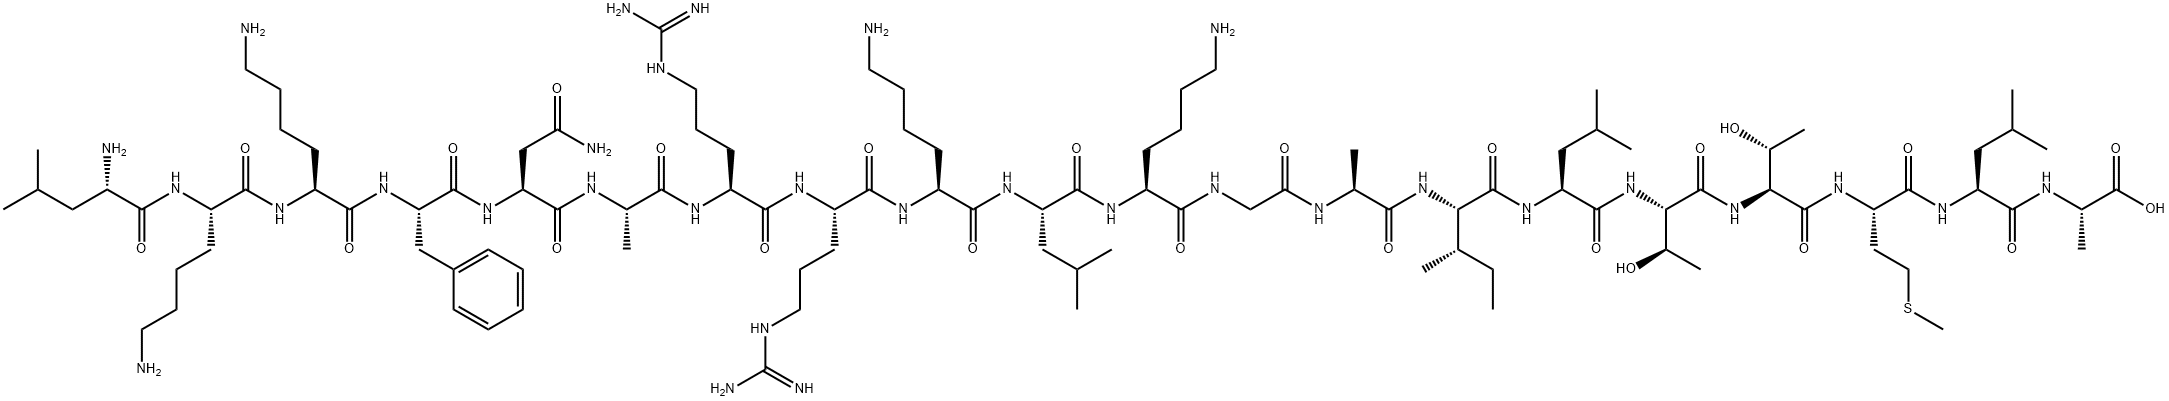 カルモジュリン依存性プロテインキナーゼIIフラグメント 290-309 化学構造式